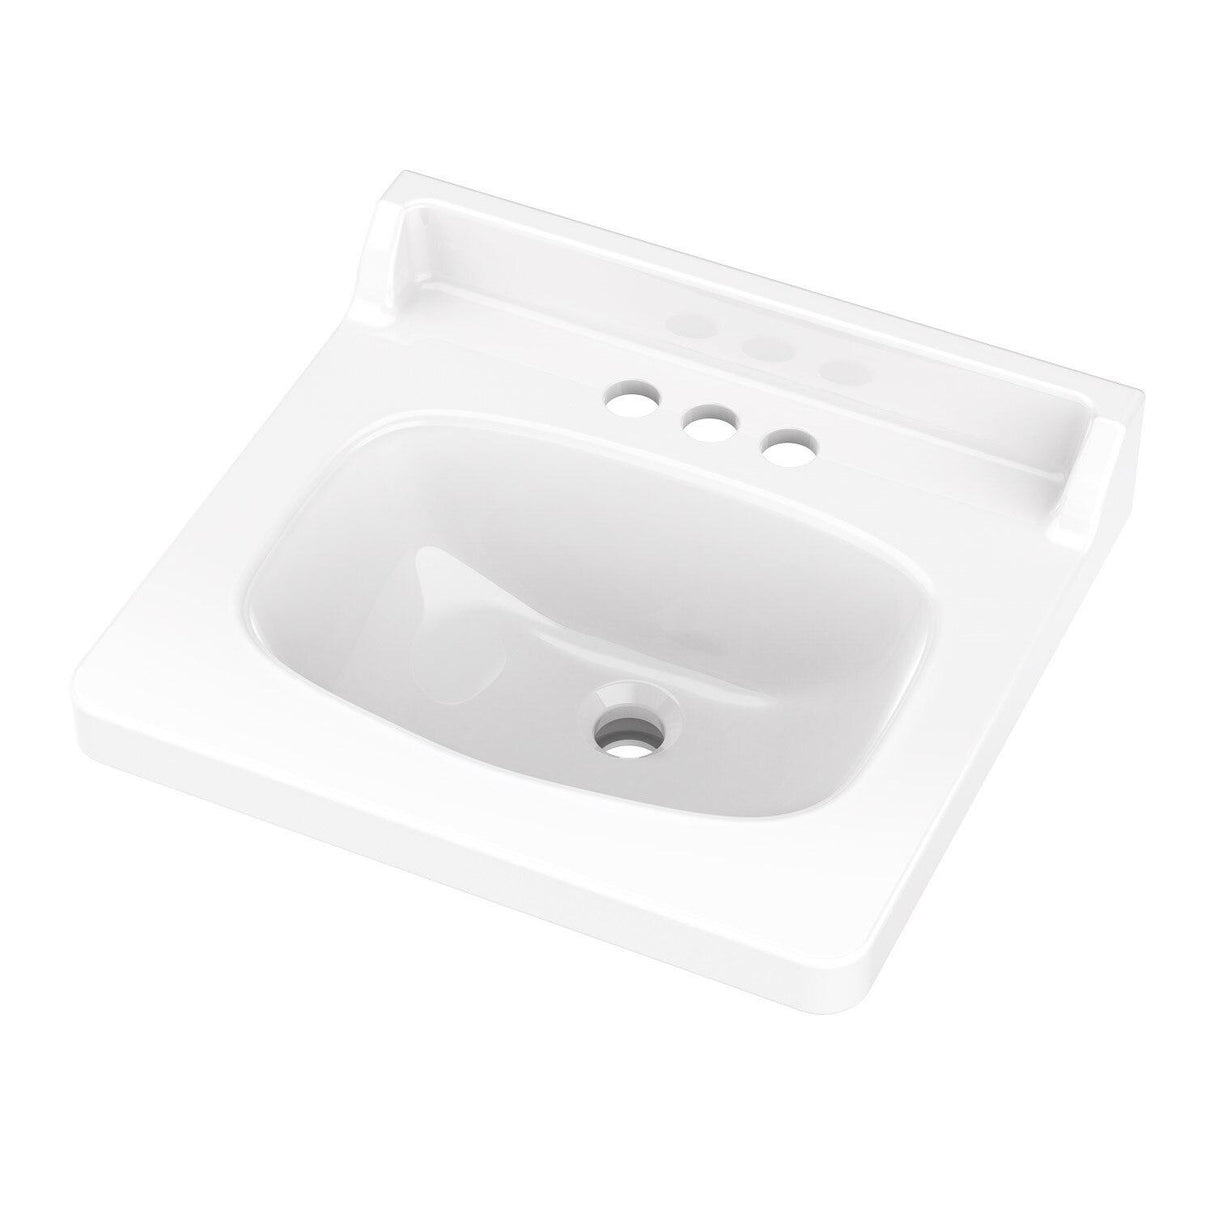 Gerber G0012224 White Marquis 4" Centers Single Door Vanity Top Bathroom Sink